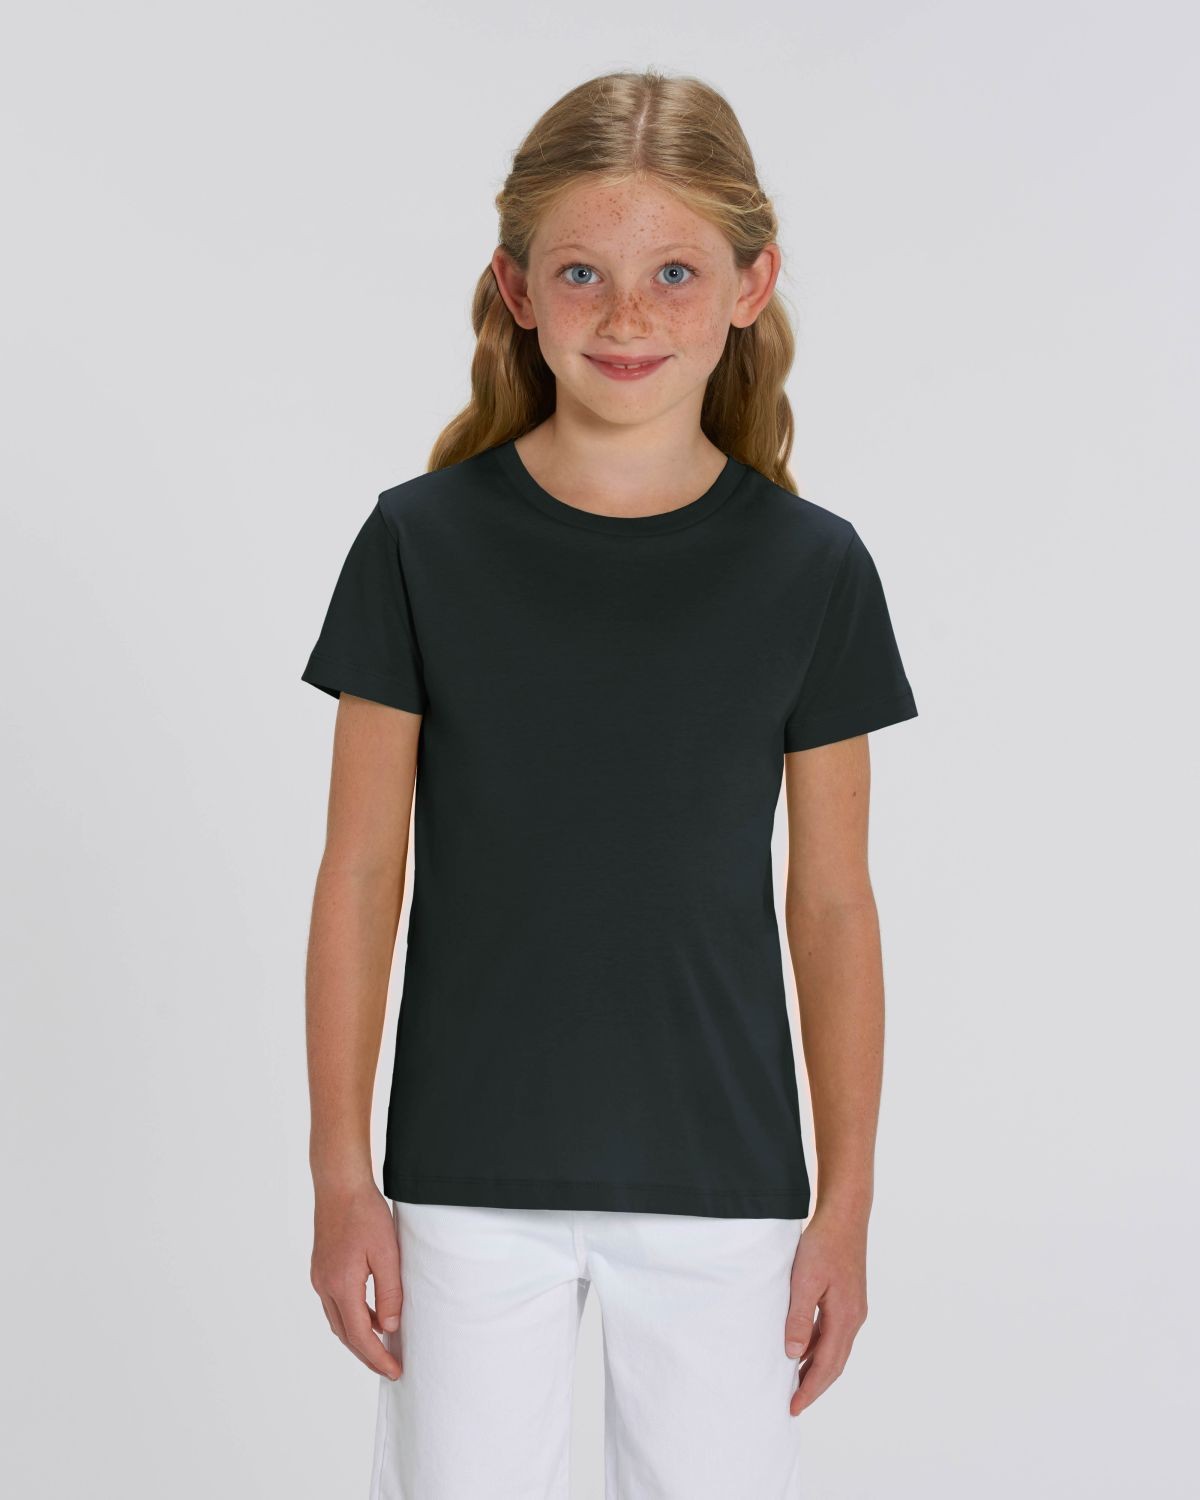 Camiseta niña Negra para personalización